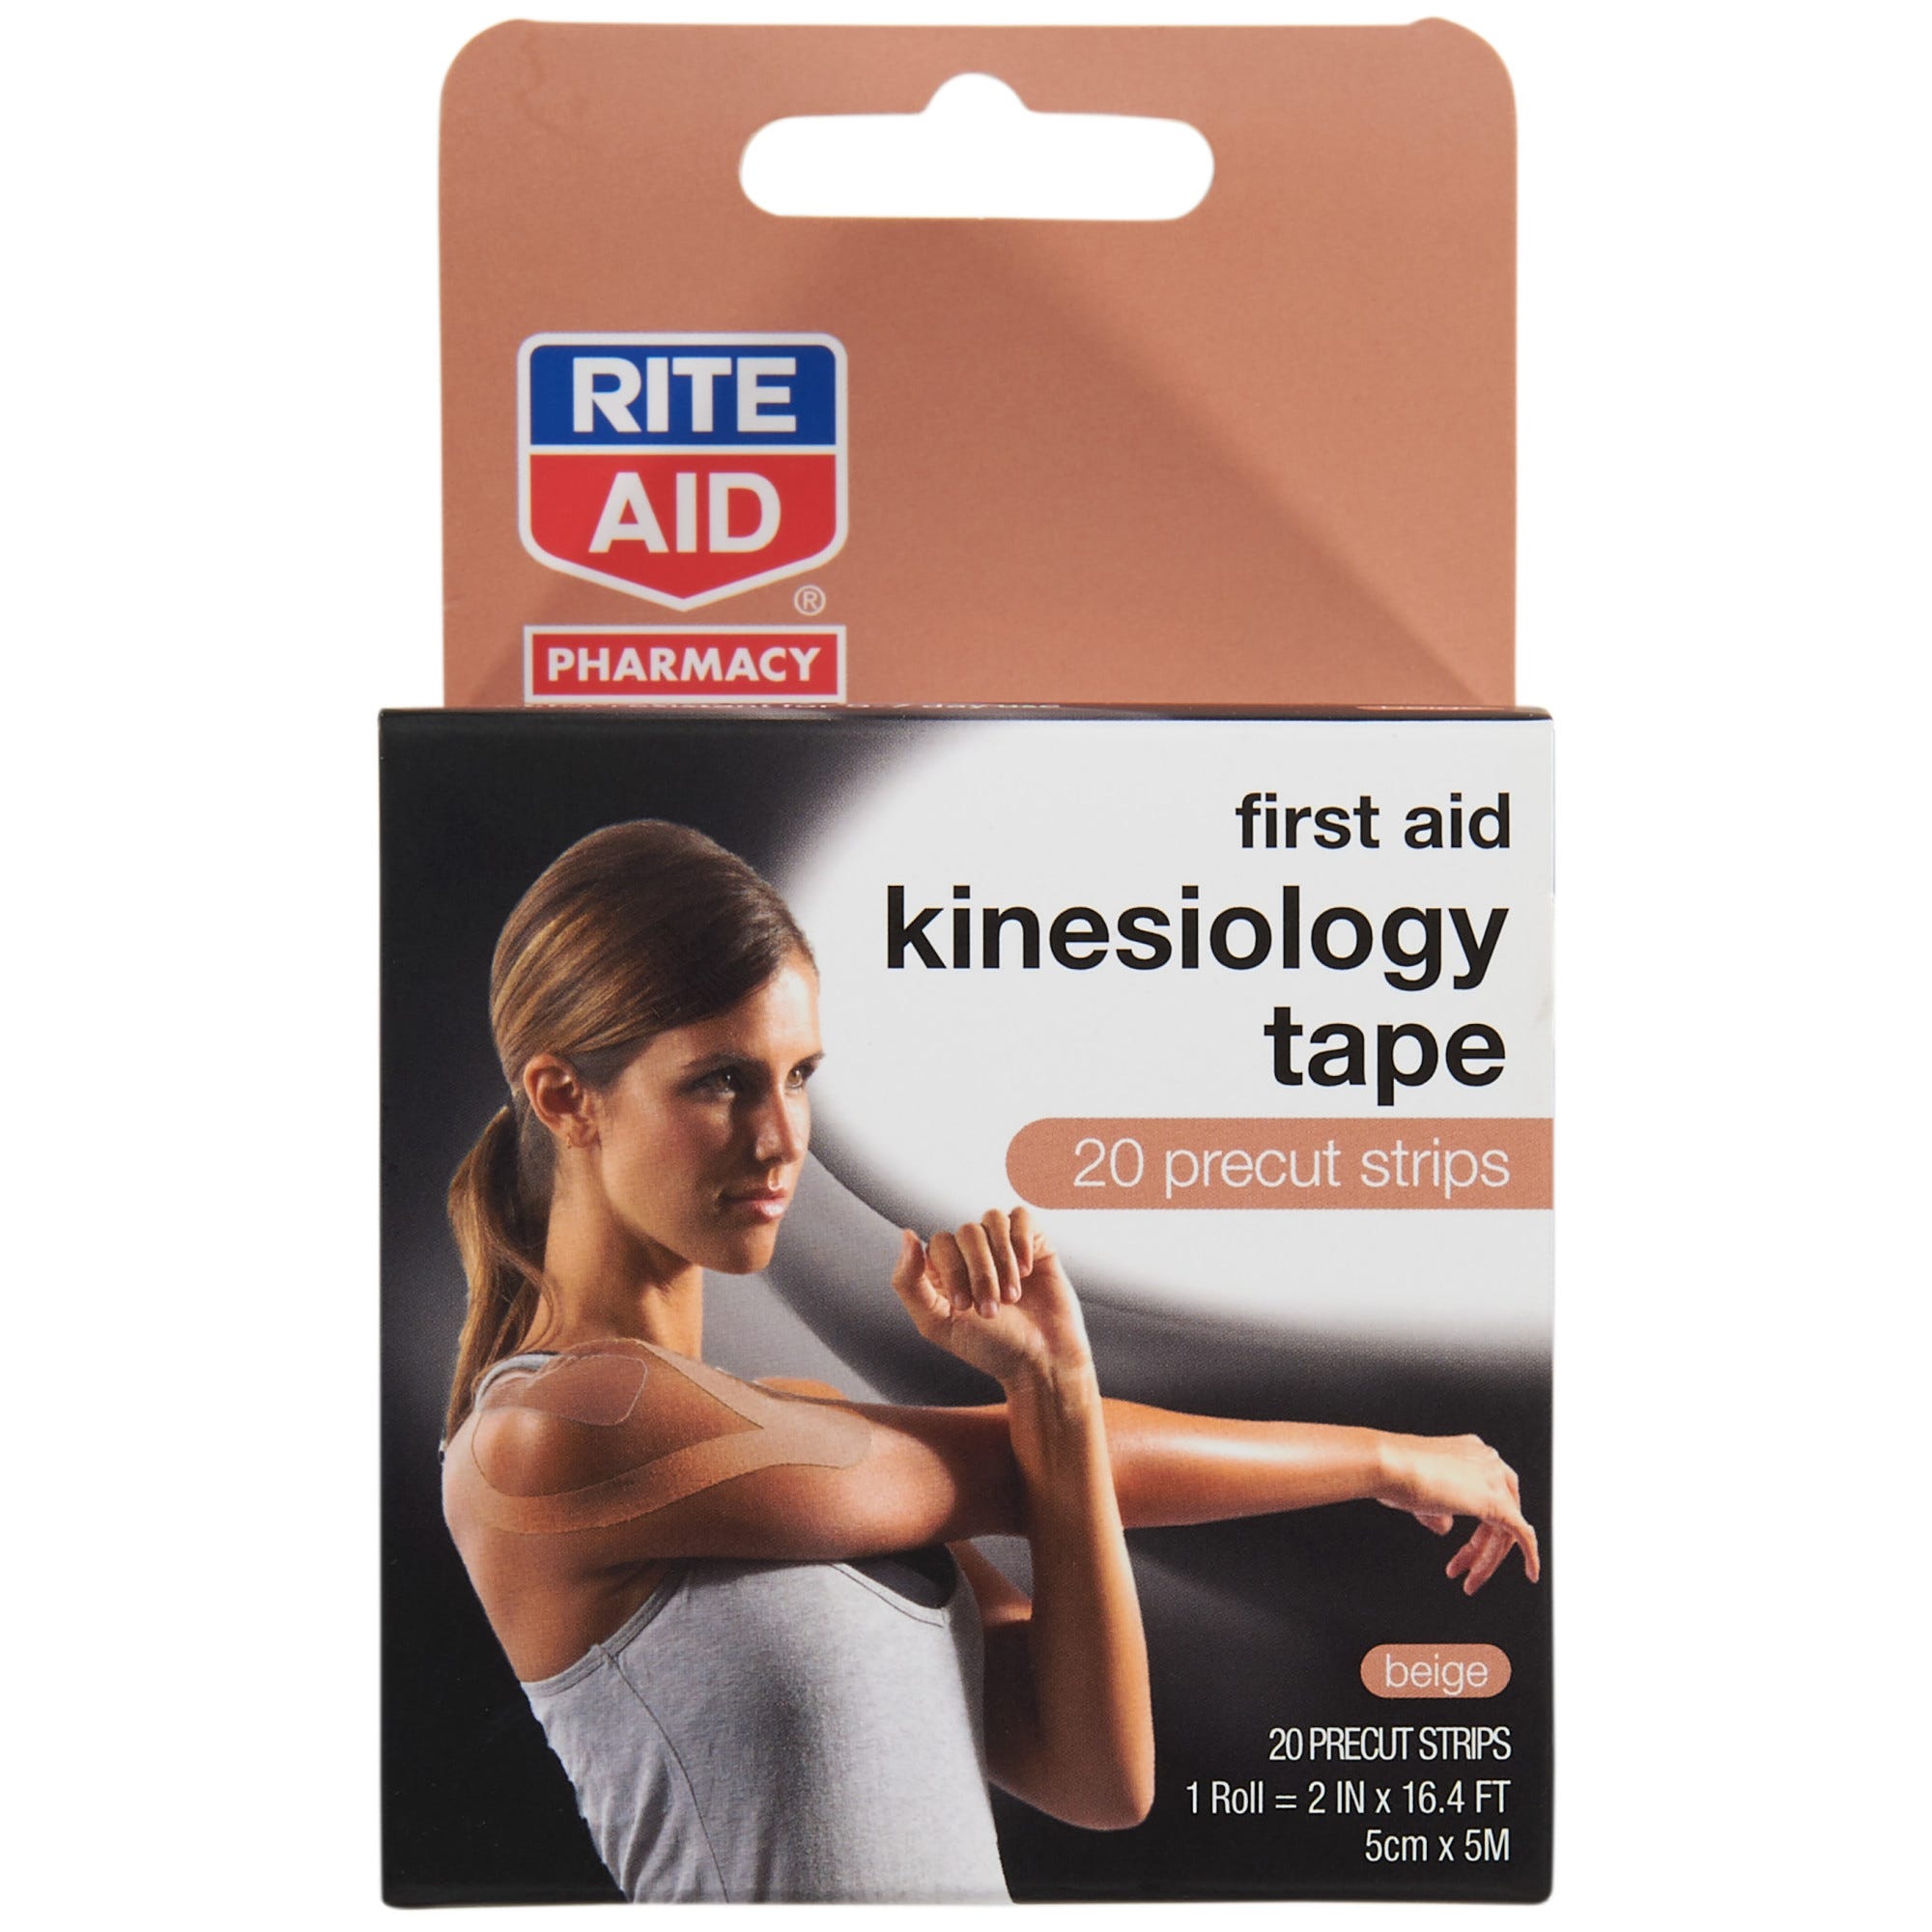 20 Precut strips Beige Rite Aid First Aid Kinesiology Tape 